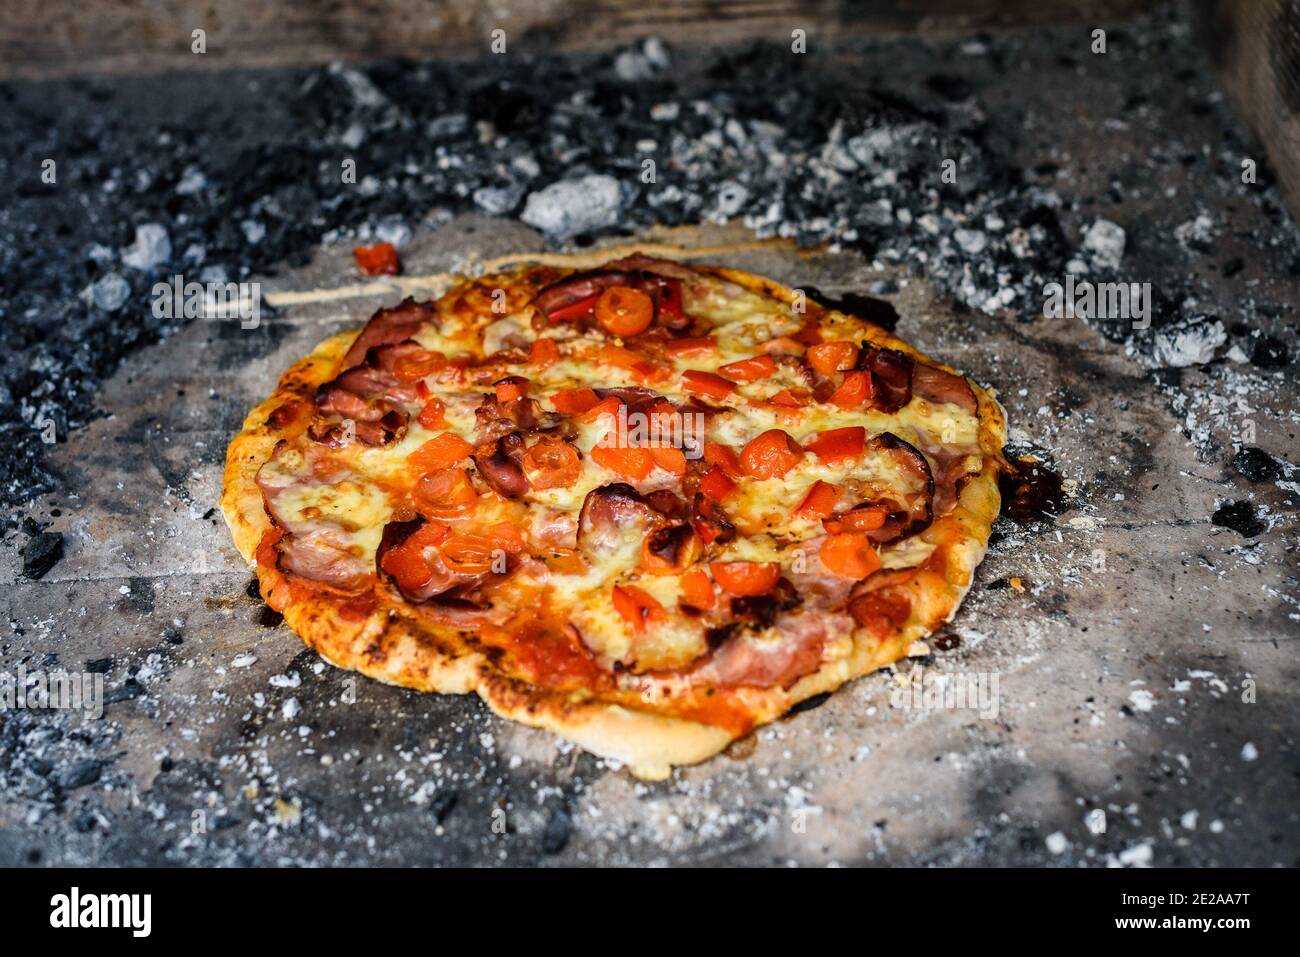 Fabrication de pizza italienne maison dans un four en brique avec cheminée.  Fabrication de pizza traditionnelle dans un foyer en brique de pierre avec  bois de feu et charbons. Fini Photo Stock -